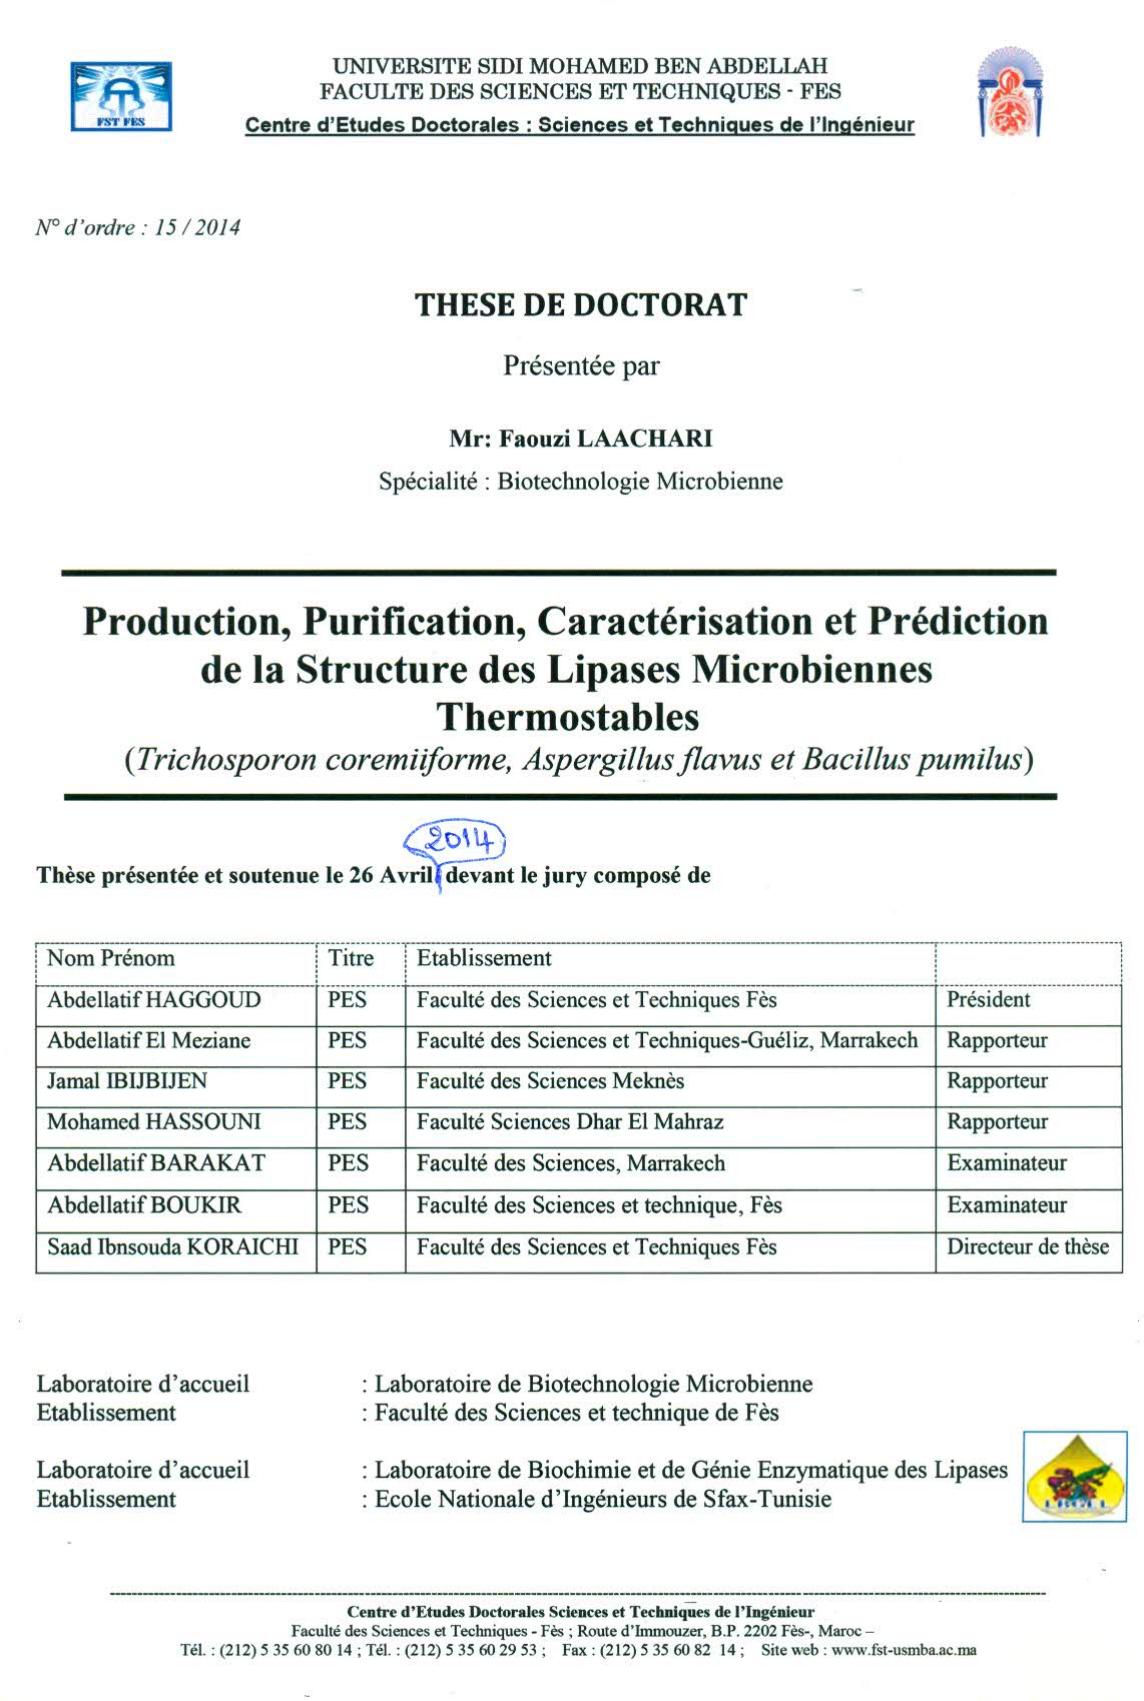 Production, Purification, Caractérisation et Prédiction de la Structure des Lipases Microbiennes Thermostables